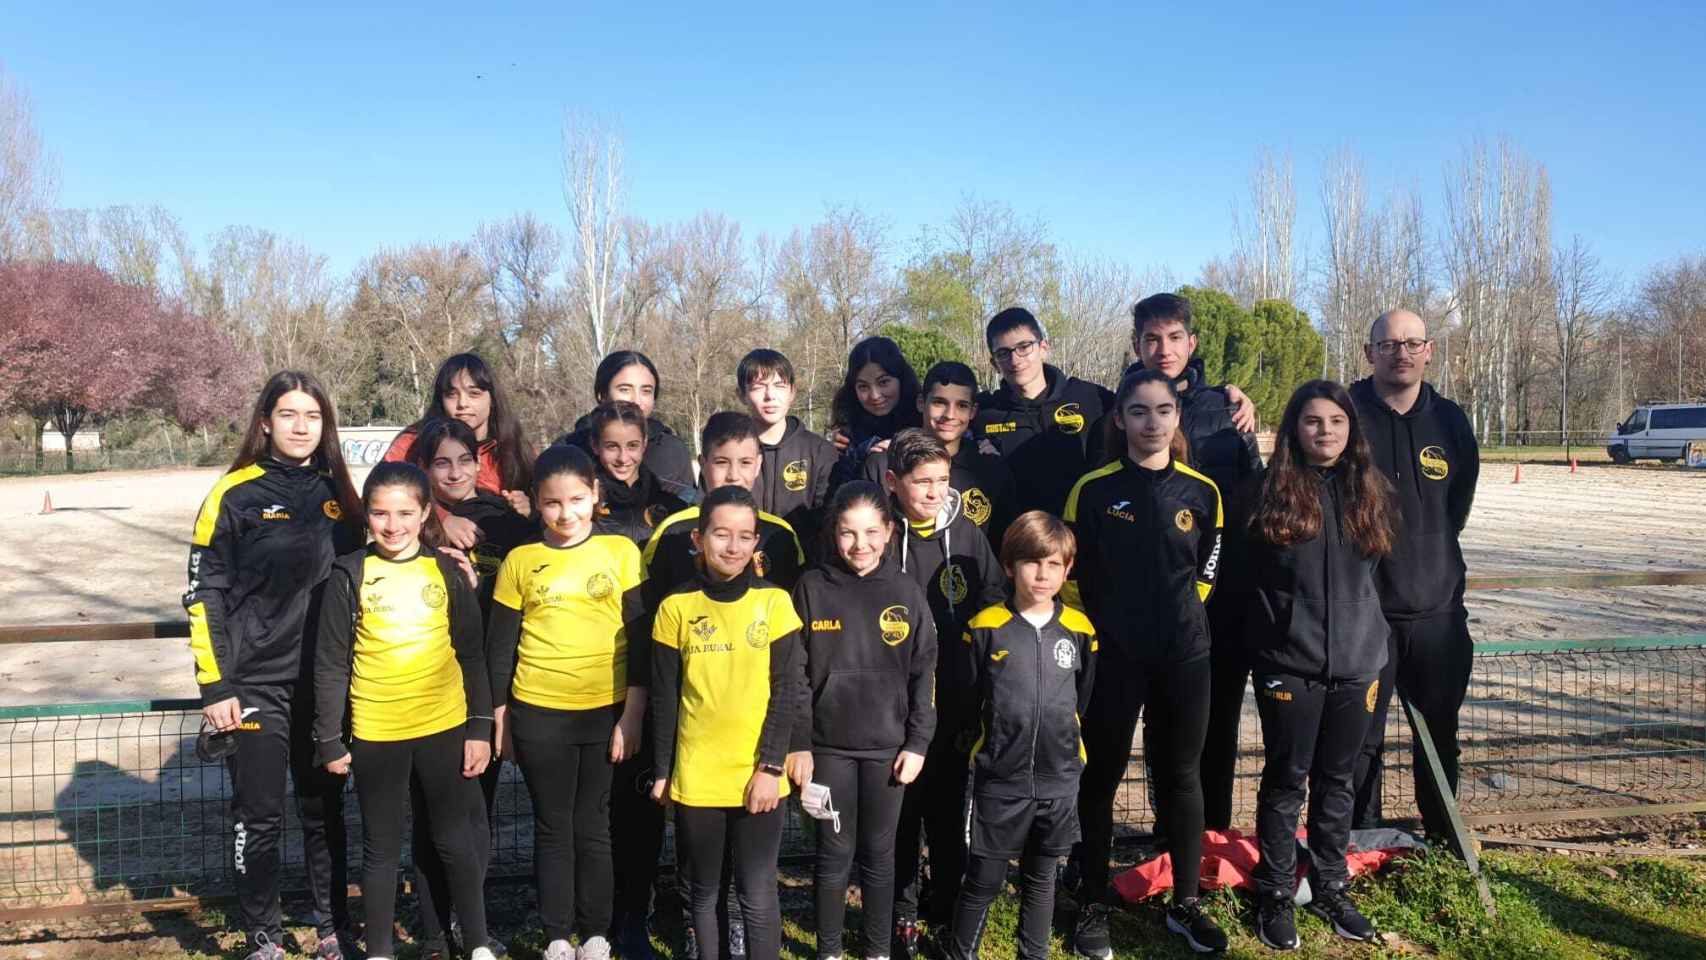 Dragones se trae el Trofeo Ciudad de Valladolid de salvamento y socorrismo para Nerea Martín en categoría juvenil